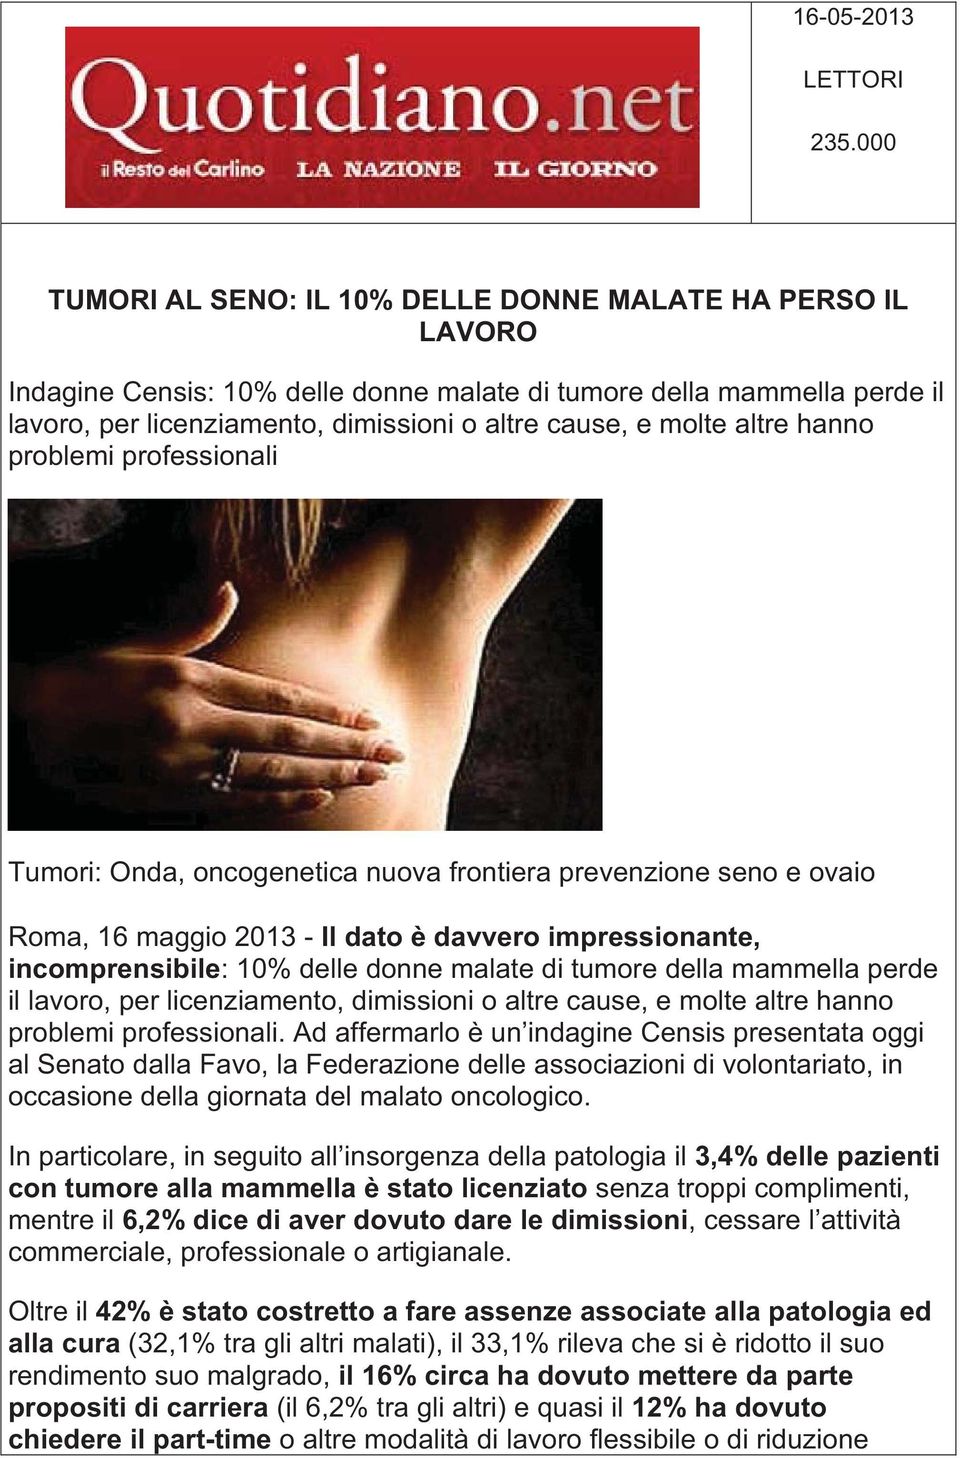 altre hanno problemi professionali Tumori: Onda, oncogenetica nuova frontiera prevenzione seno e ovaio Roma, 16 maggio 2013 - Il dato è davvero impressionante, incomprensibile: 10% delle donne malate